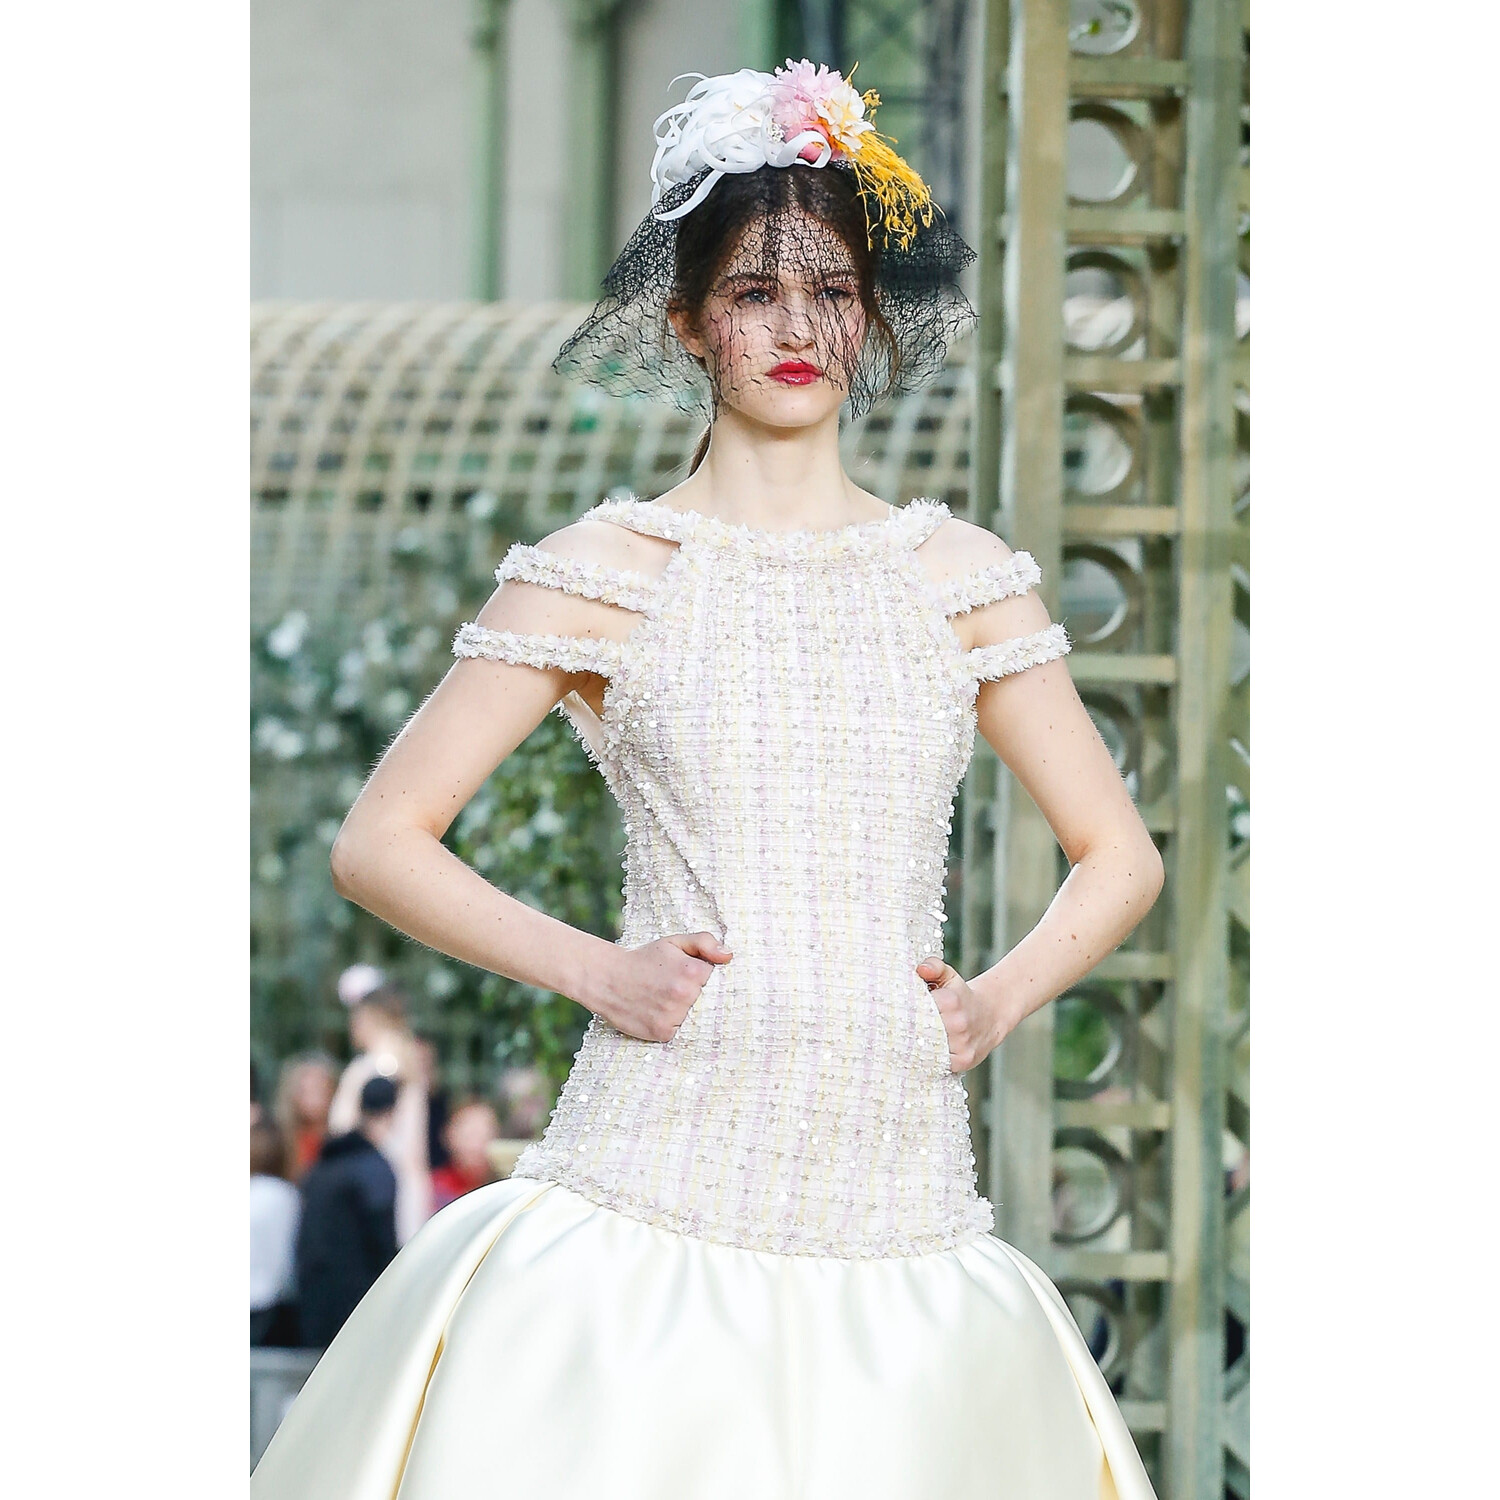 Фото Details Chanel spring 2018 couture Paris PFW коллекция 2018 Детали коллекции Шанель кутюр лето 2018 неделя высокой моды в Париже Mainstyles